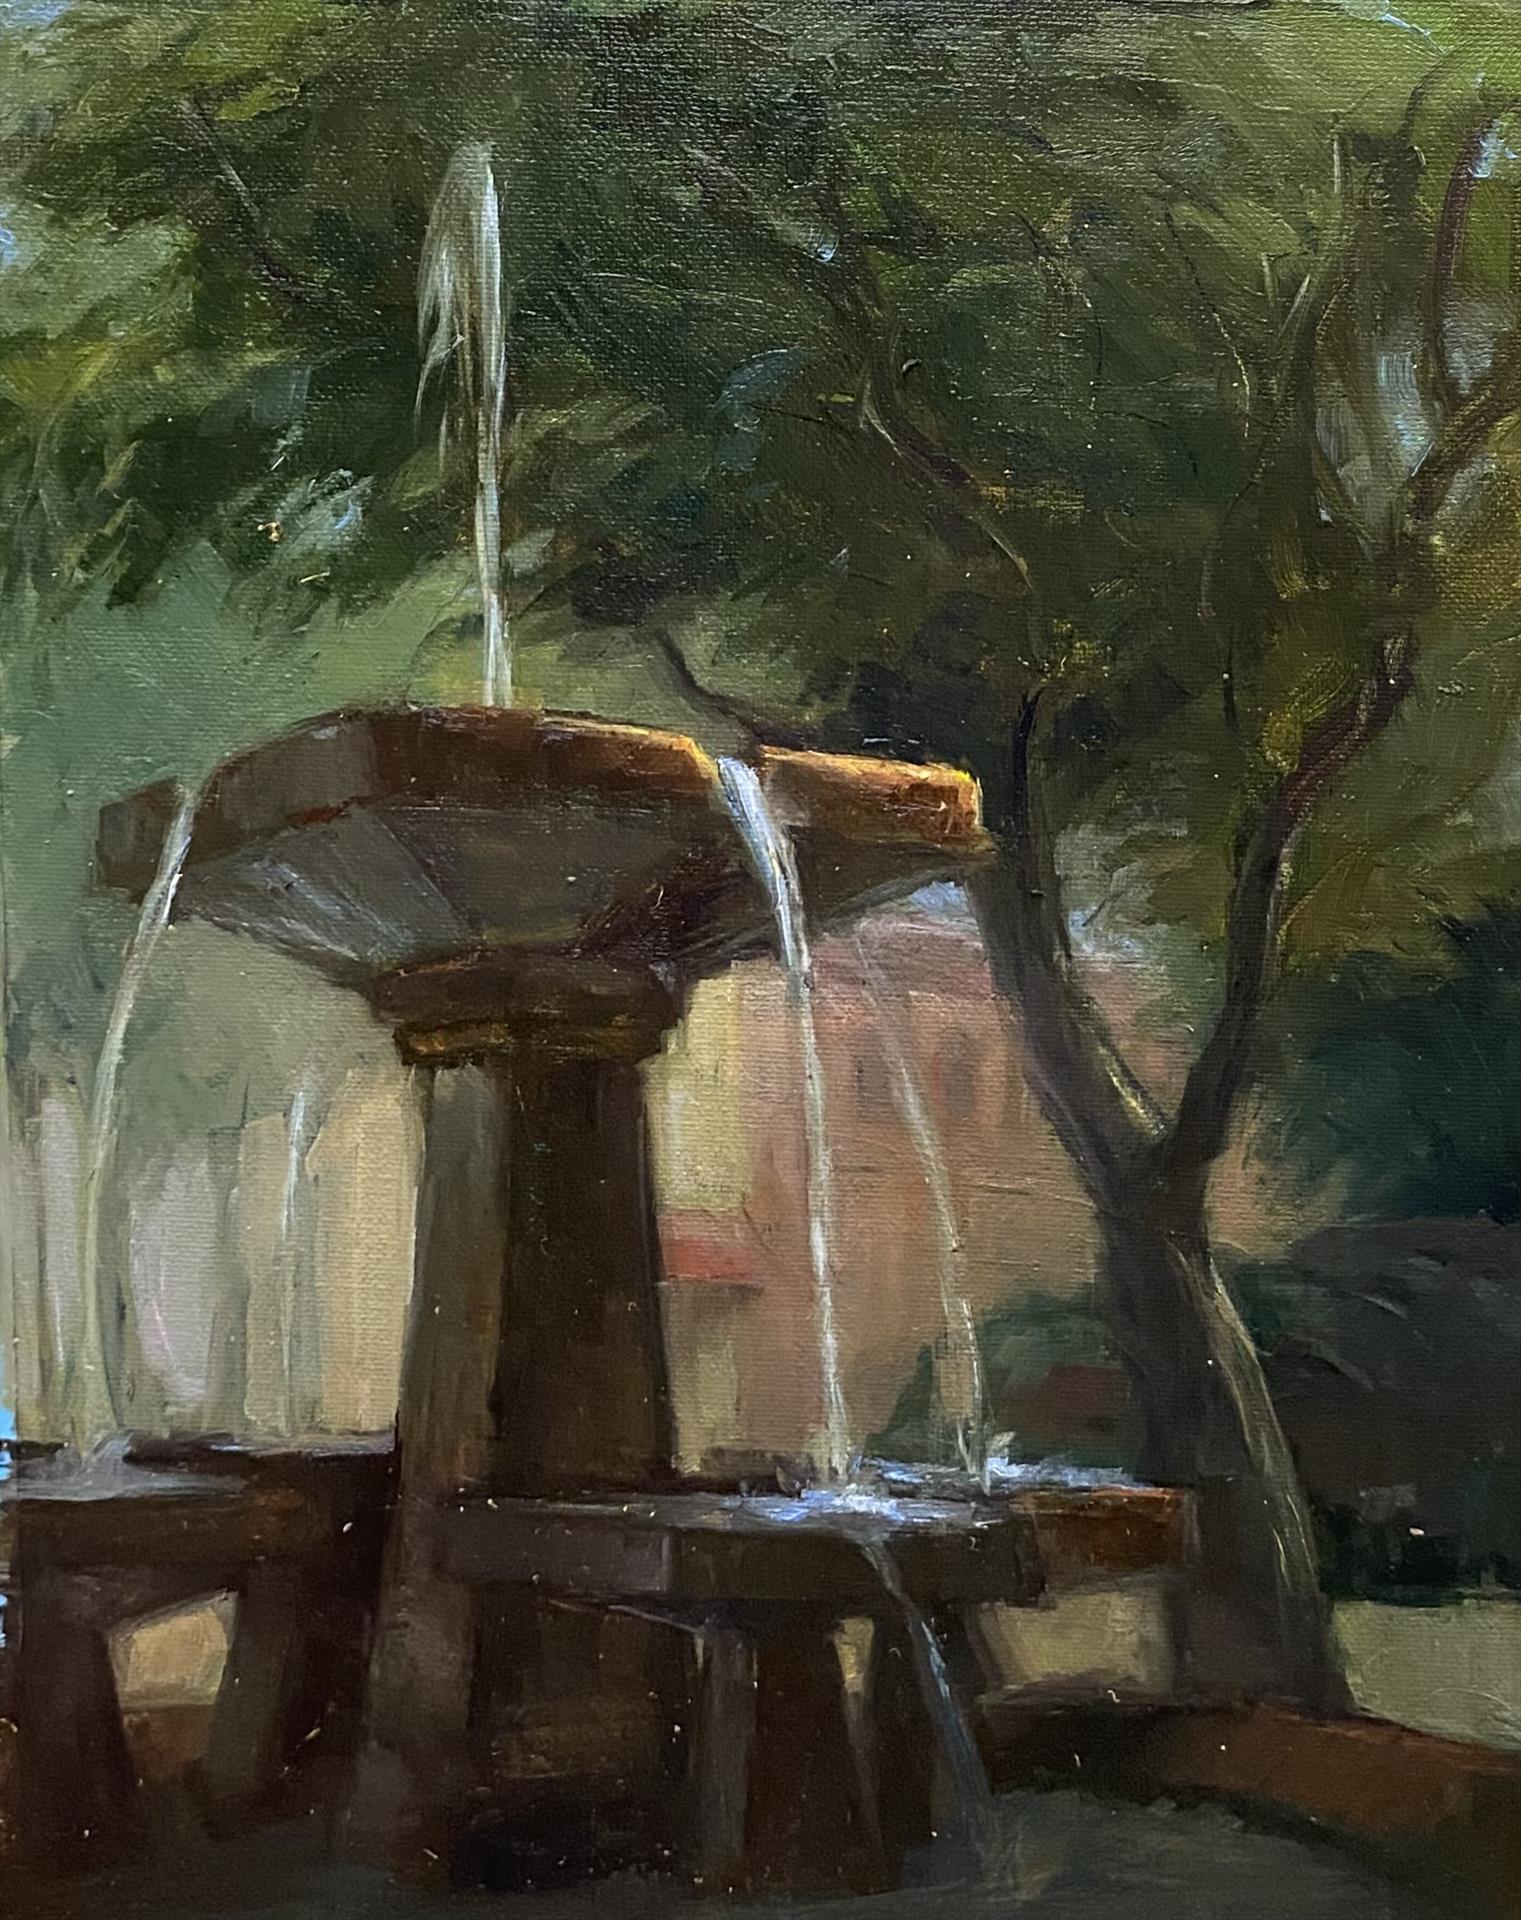 Shannon Burch — Lincoln Square Fountain